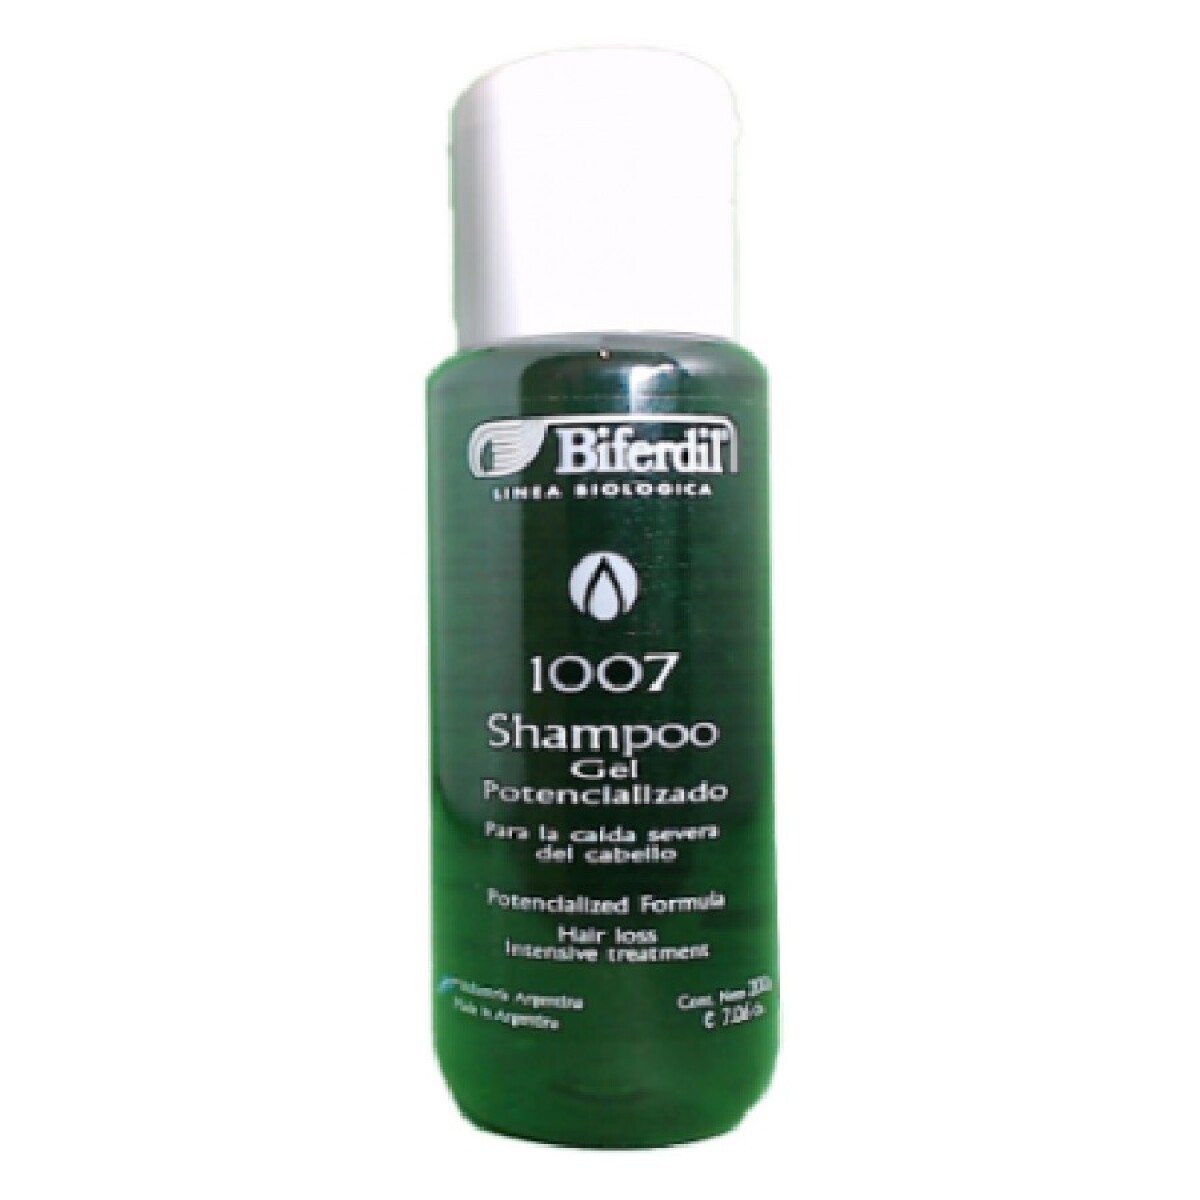 Biferdil Shampoo 1007 Gel Potencializado Para La Caida X 200ml 